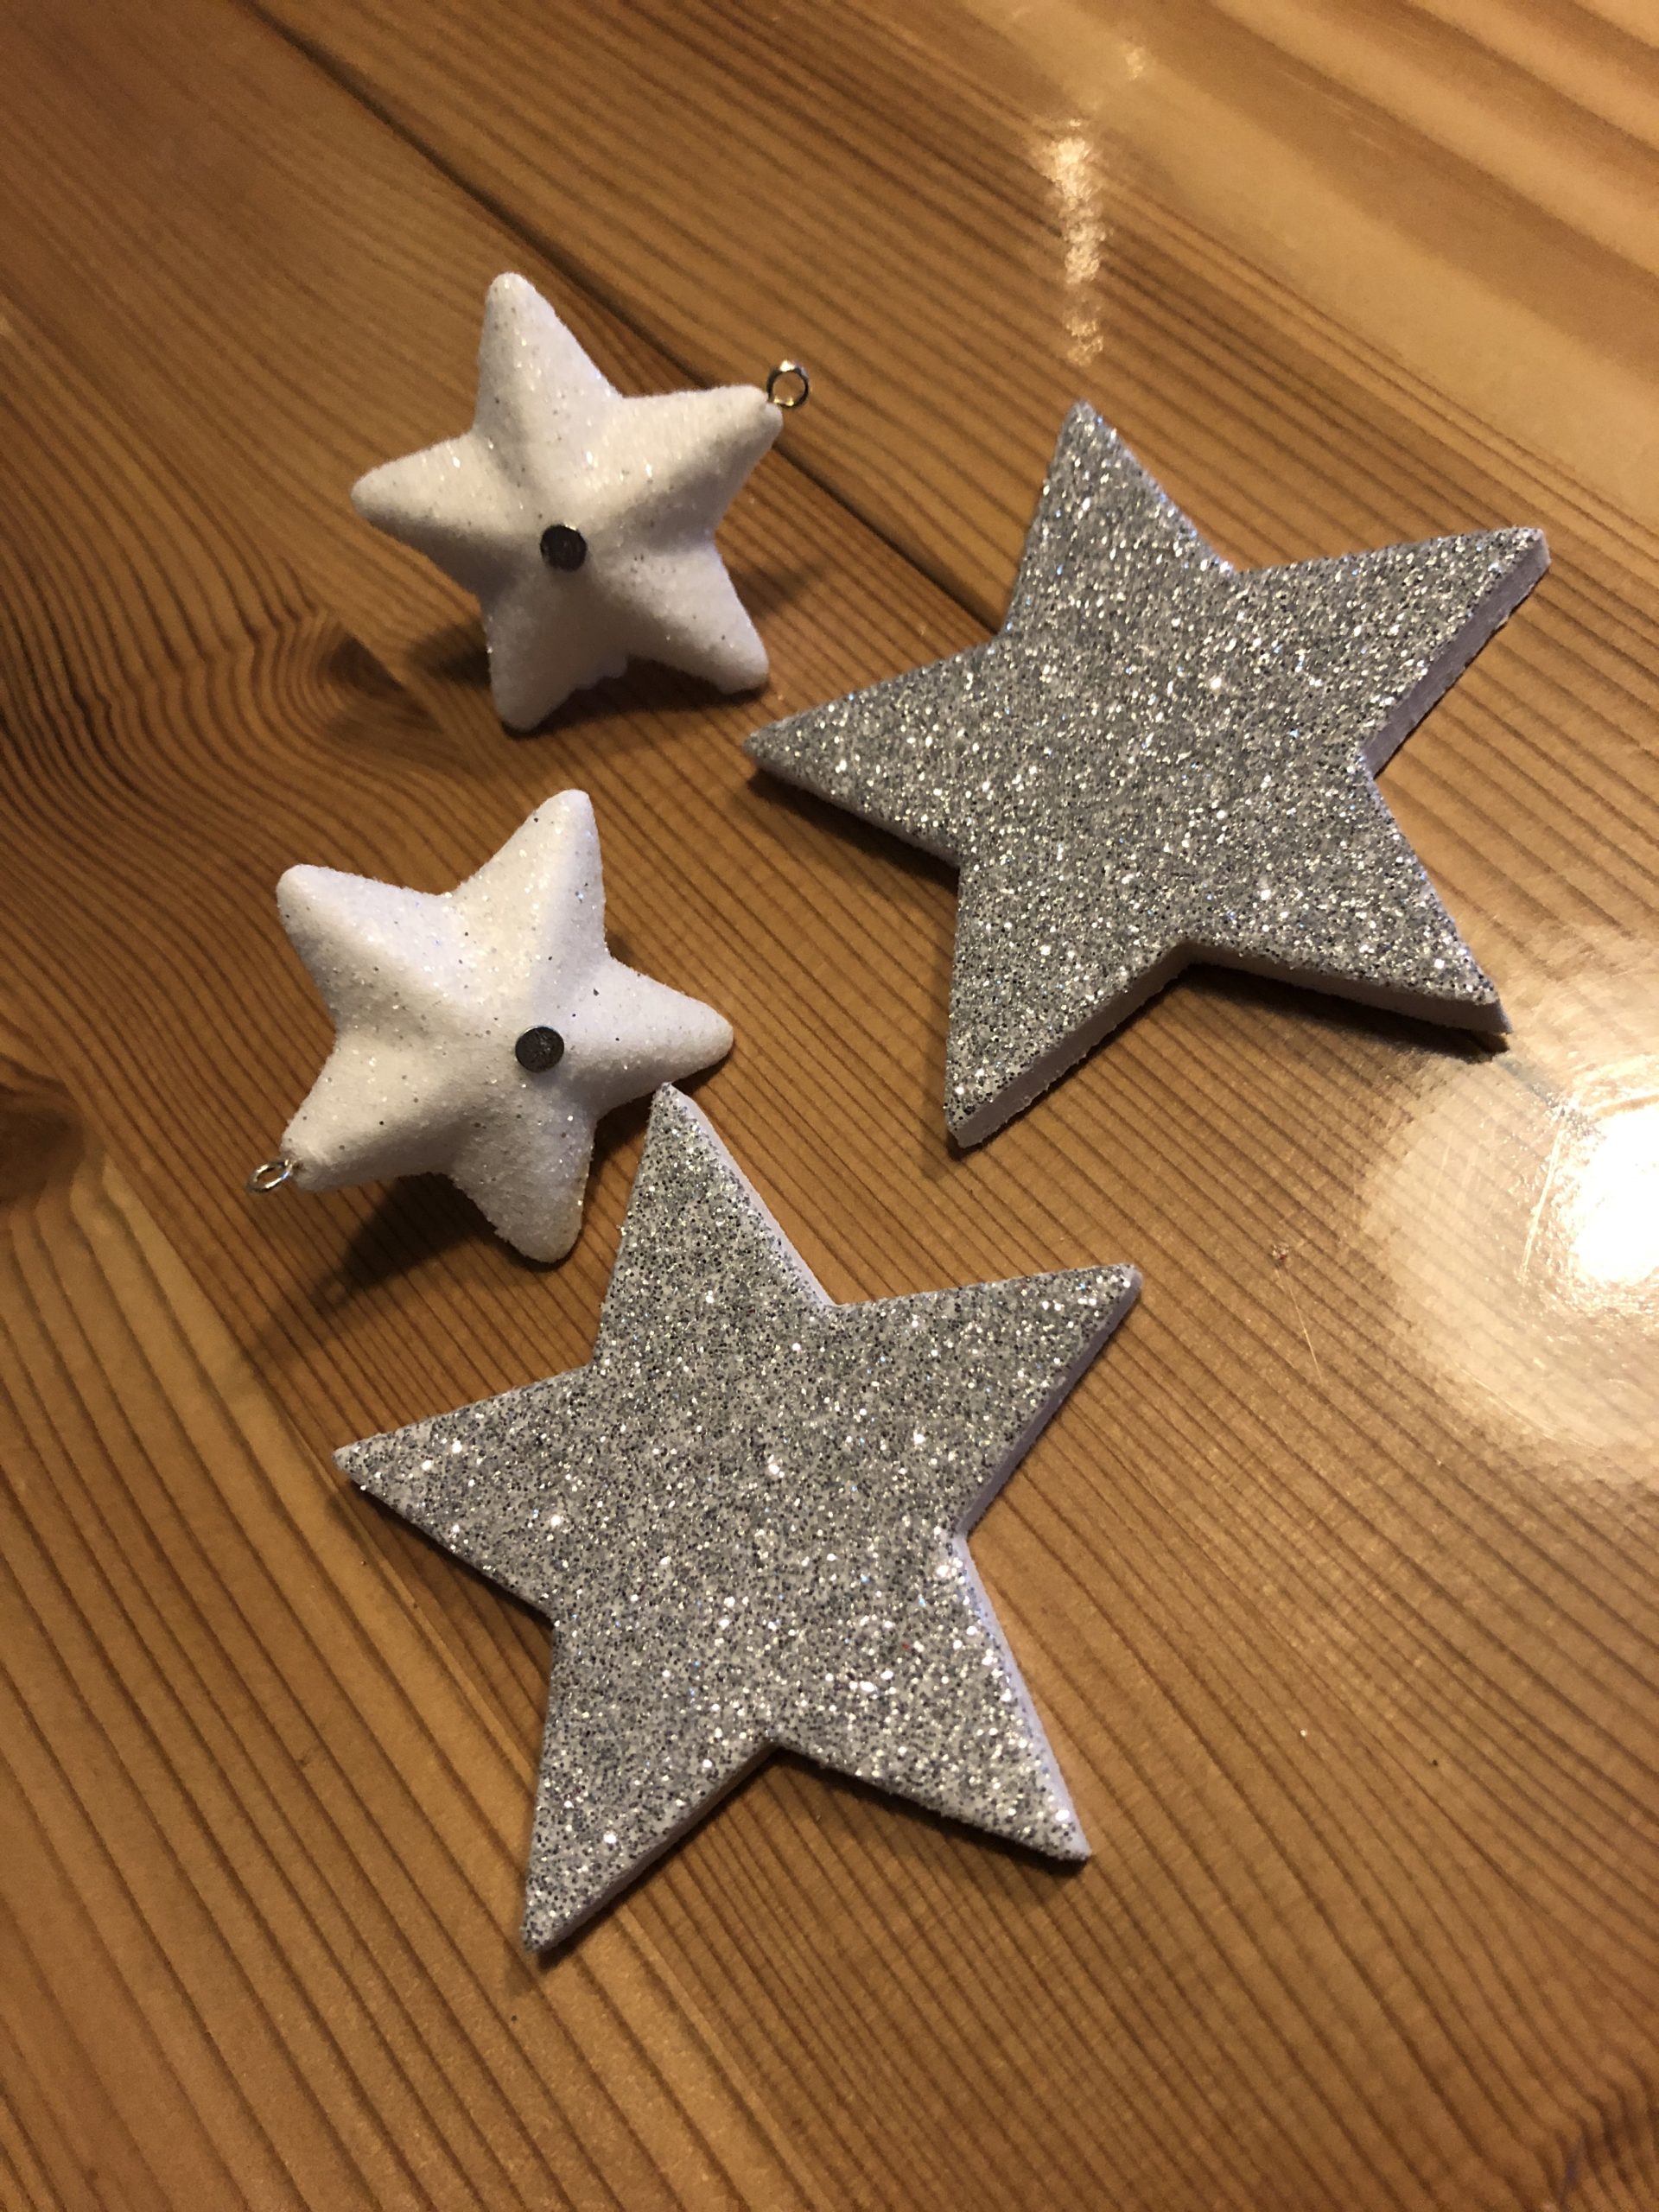 Bild zum Schritt 10 für die Kinder-Beschäftigung: 'Nehmt verschiedene Sterne aus Schaumstoff, Pappe, Styropor oder schneidet euch...'